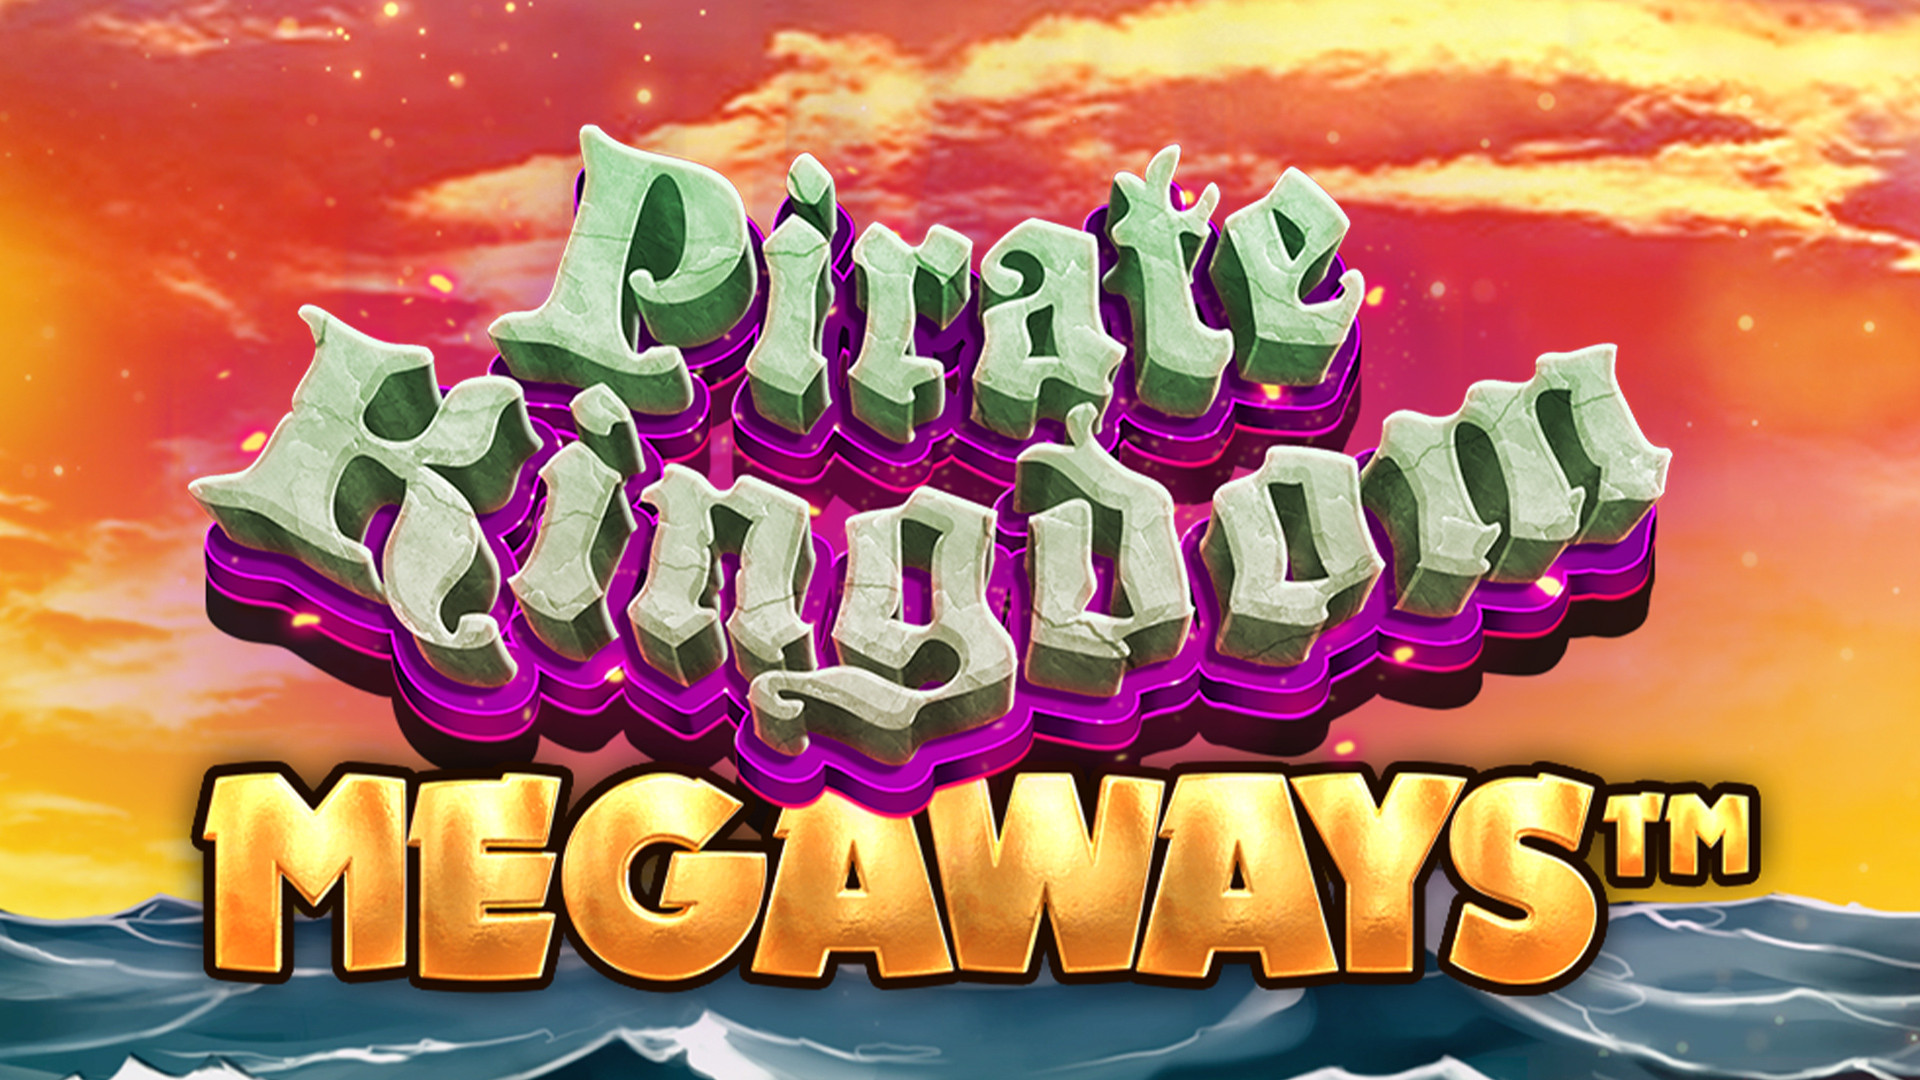 Pirate Kingdom MEGAWAYS